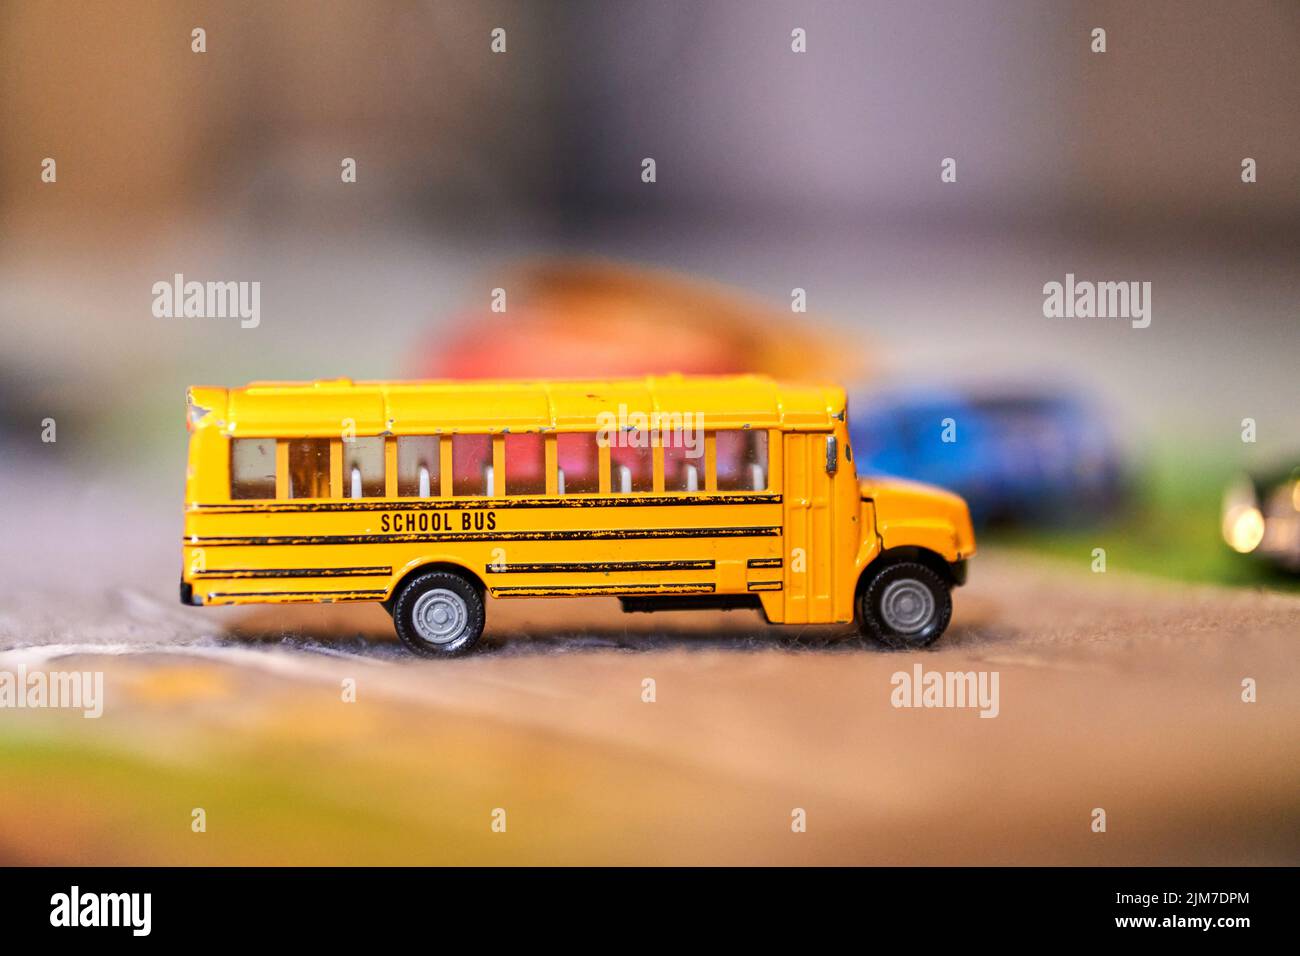 Juego de juguetes de autobús, autobús escolar, juguete de metal fundido a  presión, autobús amarillo, autobús urbano, metro, tren, vehículos de  juguete